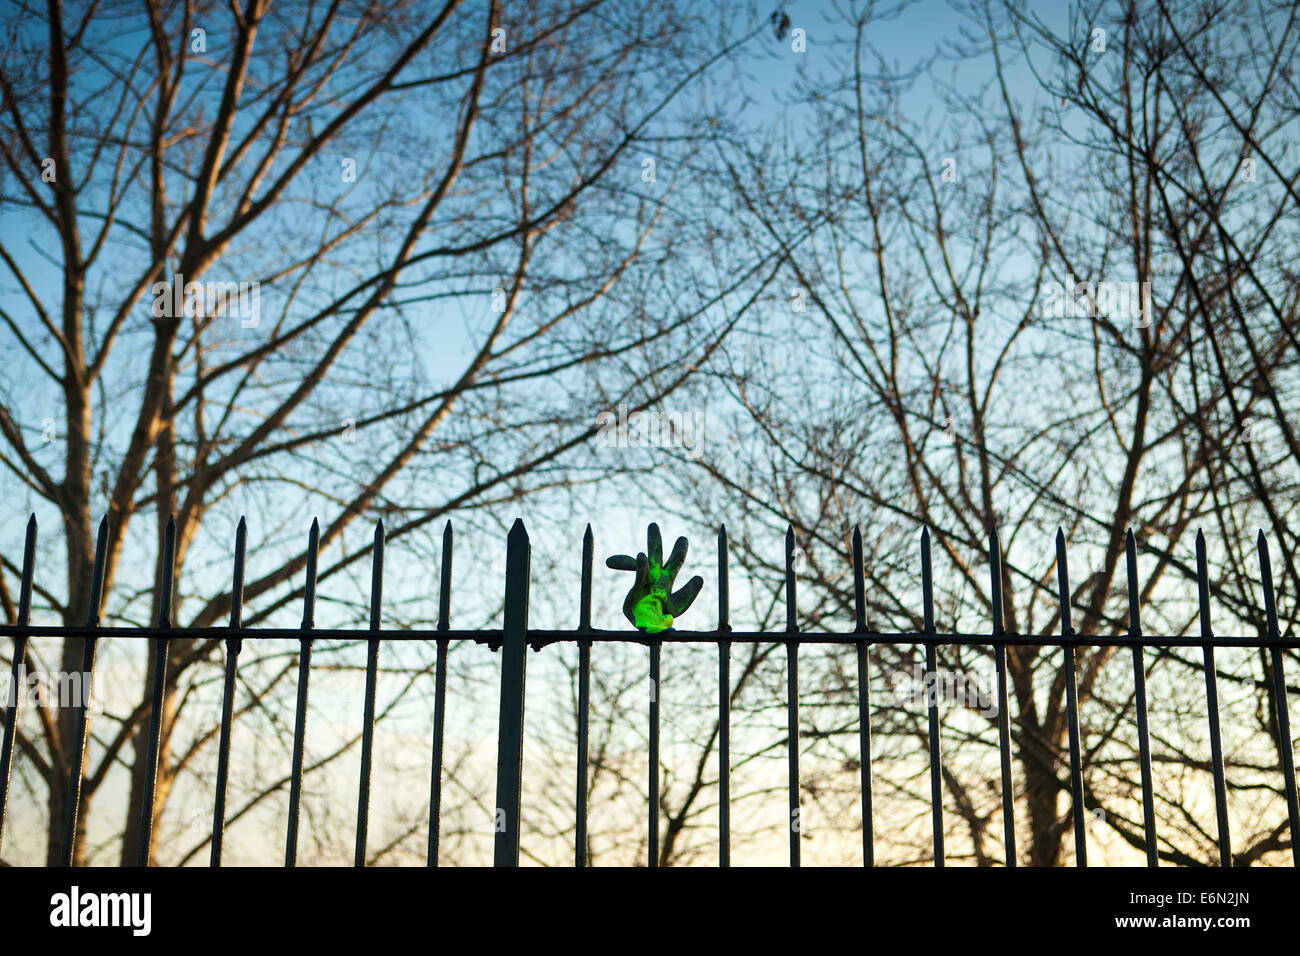 Verlorenen Handschuh auf einen Zaun Spike mit Bäumen hinter gelegt. Stockfoto